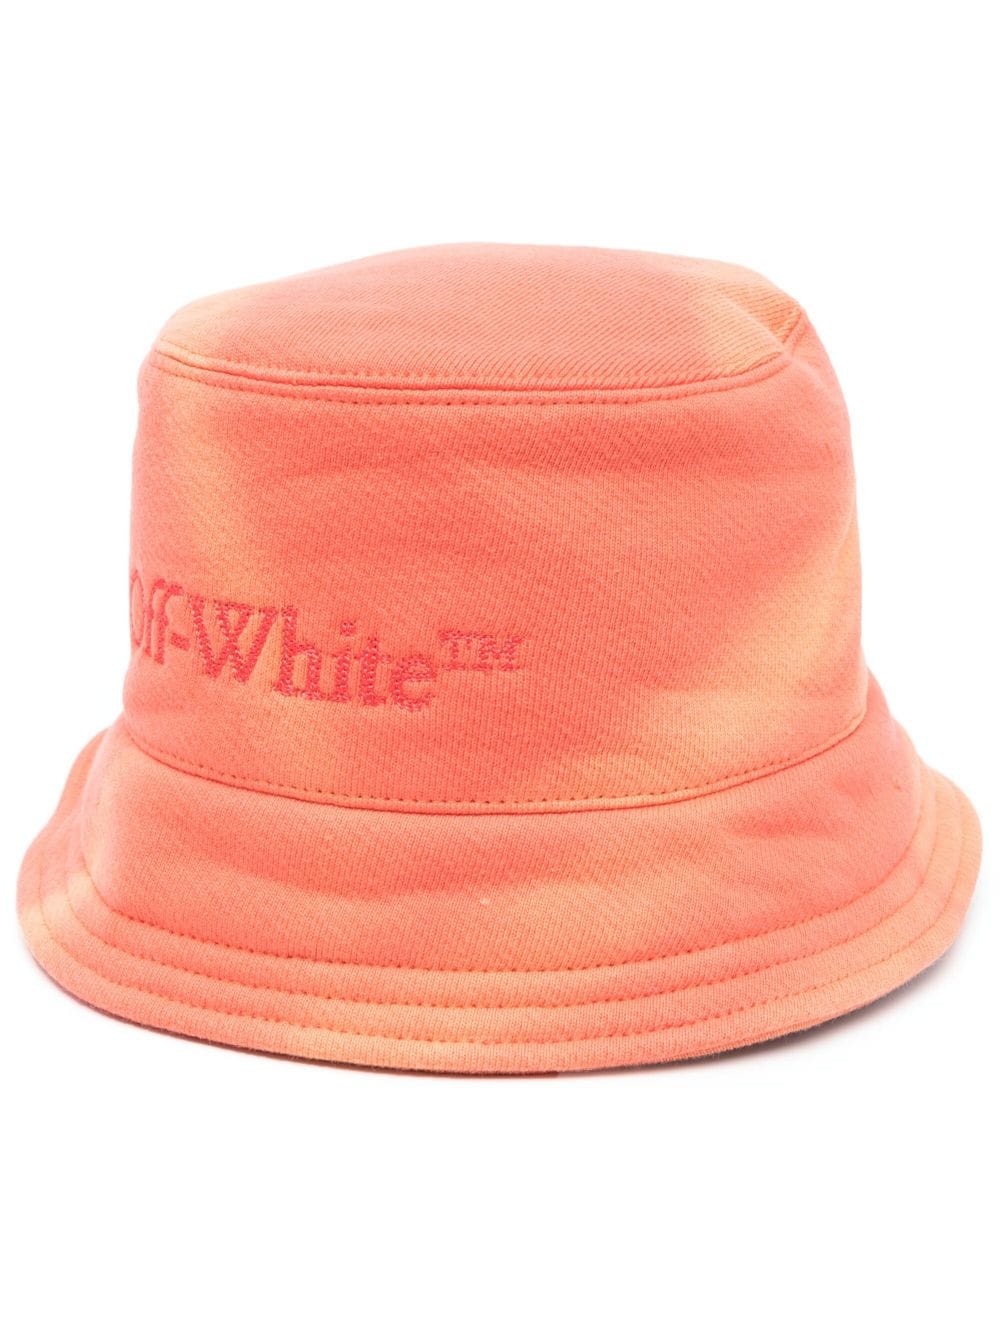 Off-White tie-dye bucket hat - Orange